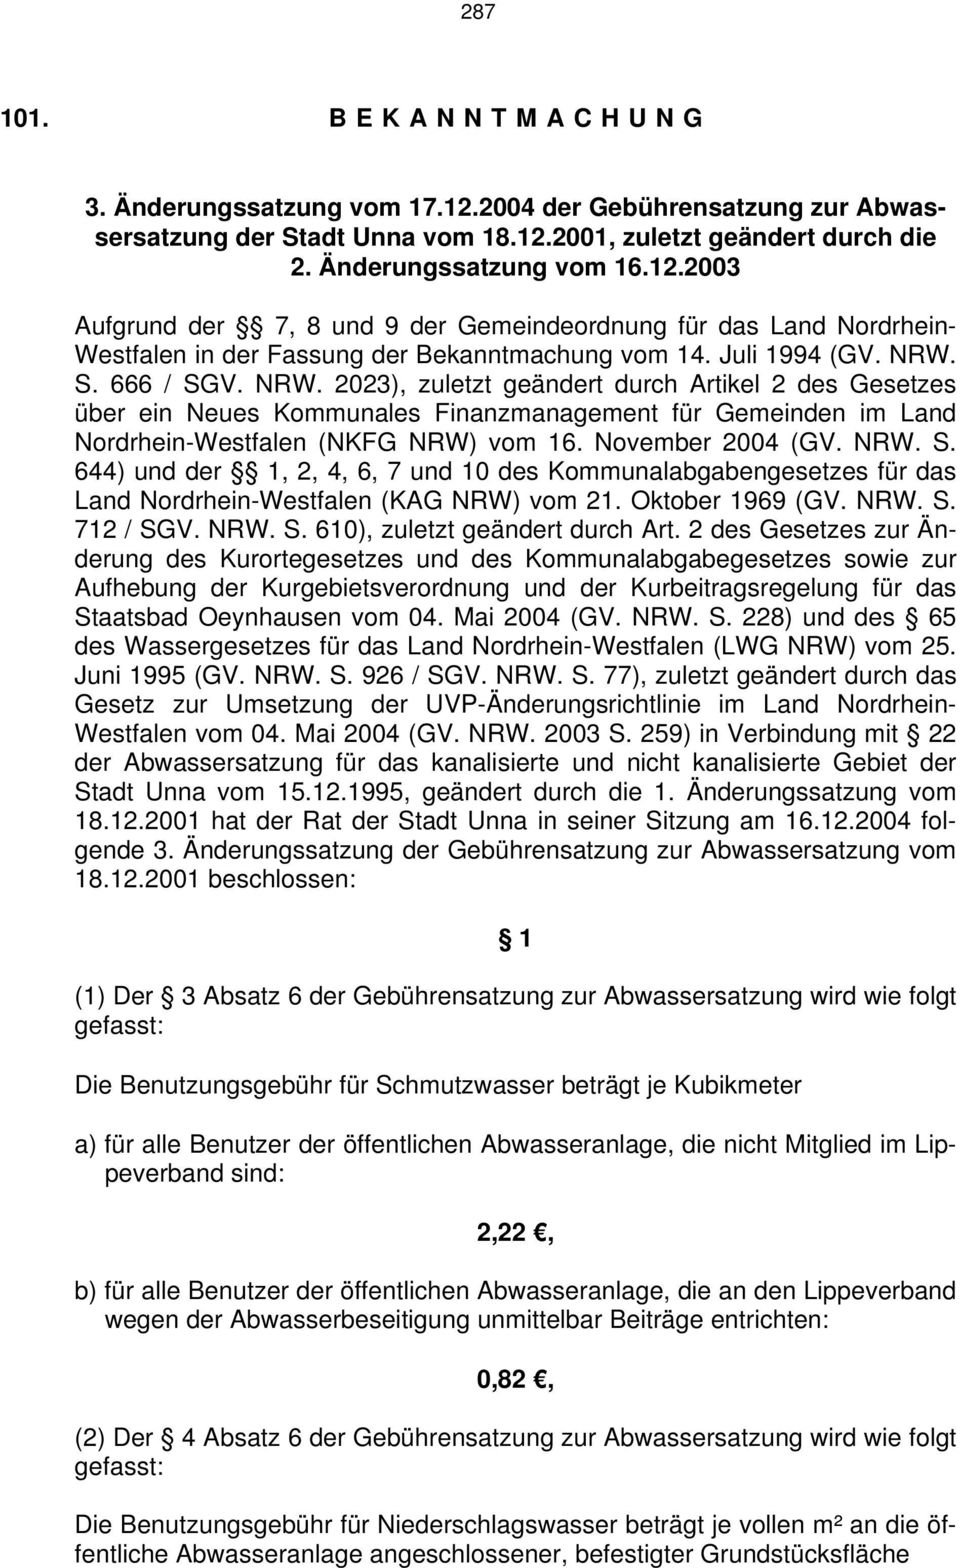 November 2004 (GV. NRW. S. 644) und der 1, 2, 4, 6, 7 und 10 des Kommunalabgabengesetzes für das Land Nordrhein-Westfalen (KAG NRW) vom 21. Oktober 1969 (GV. NRW. S. 712 / SGV. NRW. S. 610), zuletzt geändert durch Art.